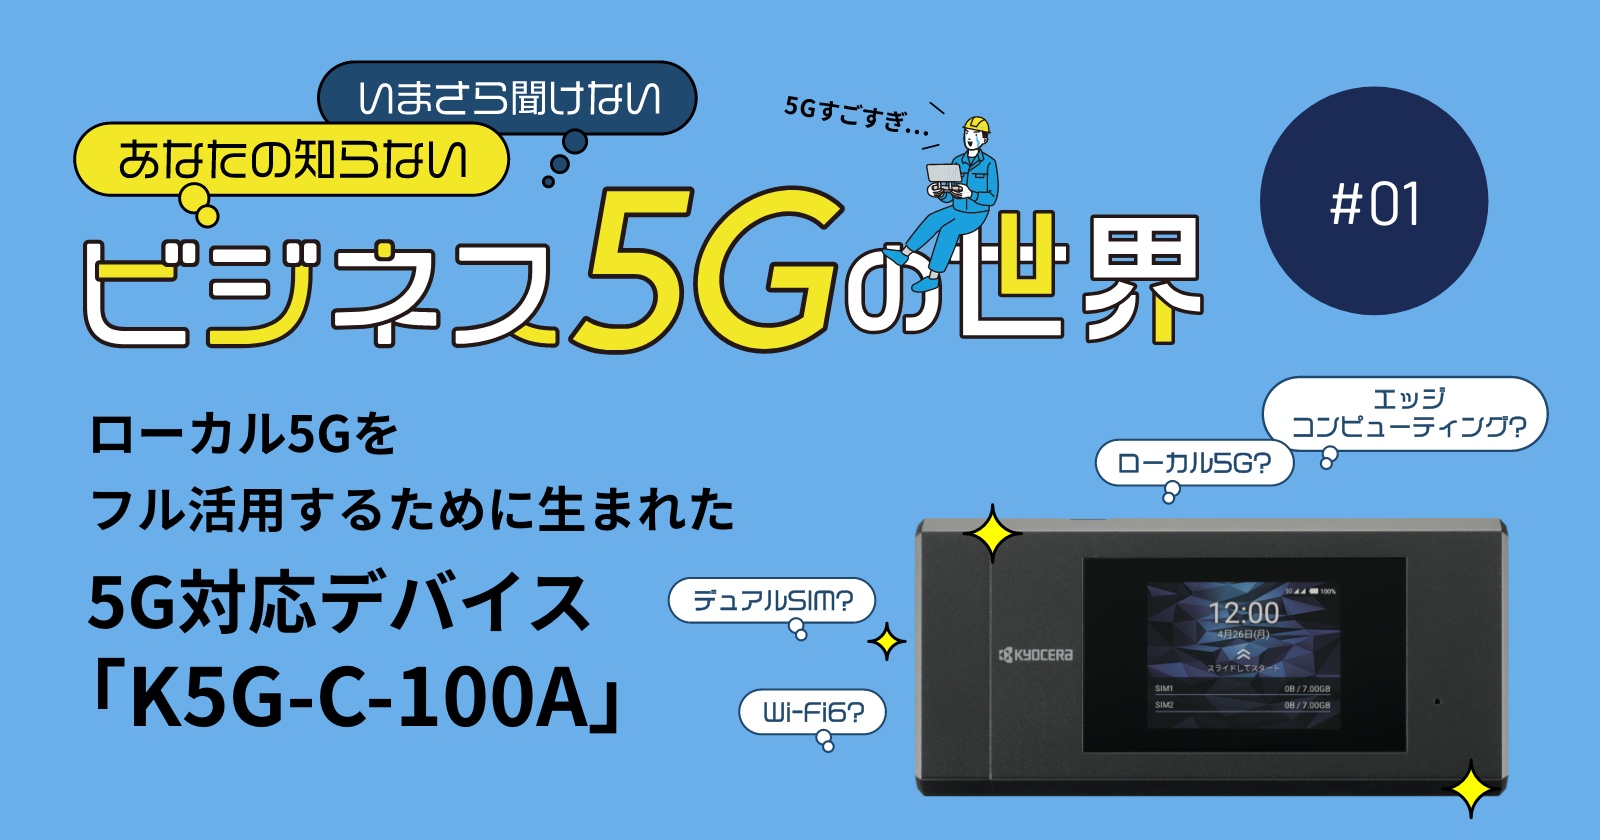 ローカル5Gをフル活用するために生まれた5G対応デバイス「K5G-C-100A」